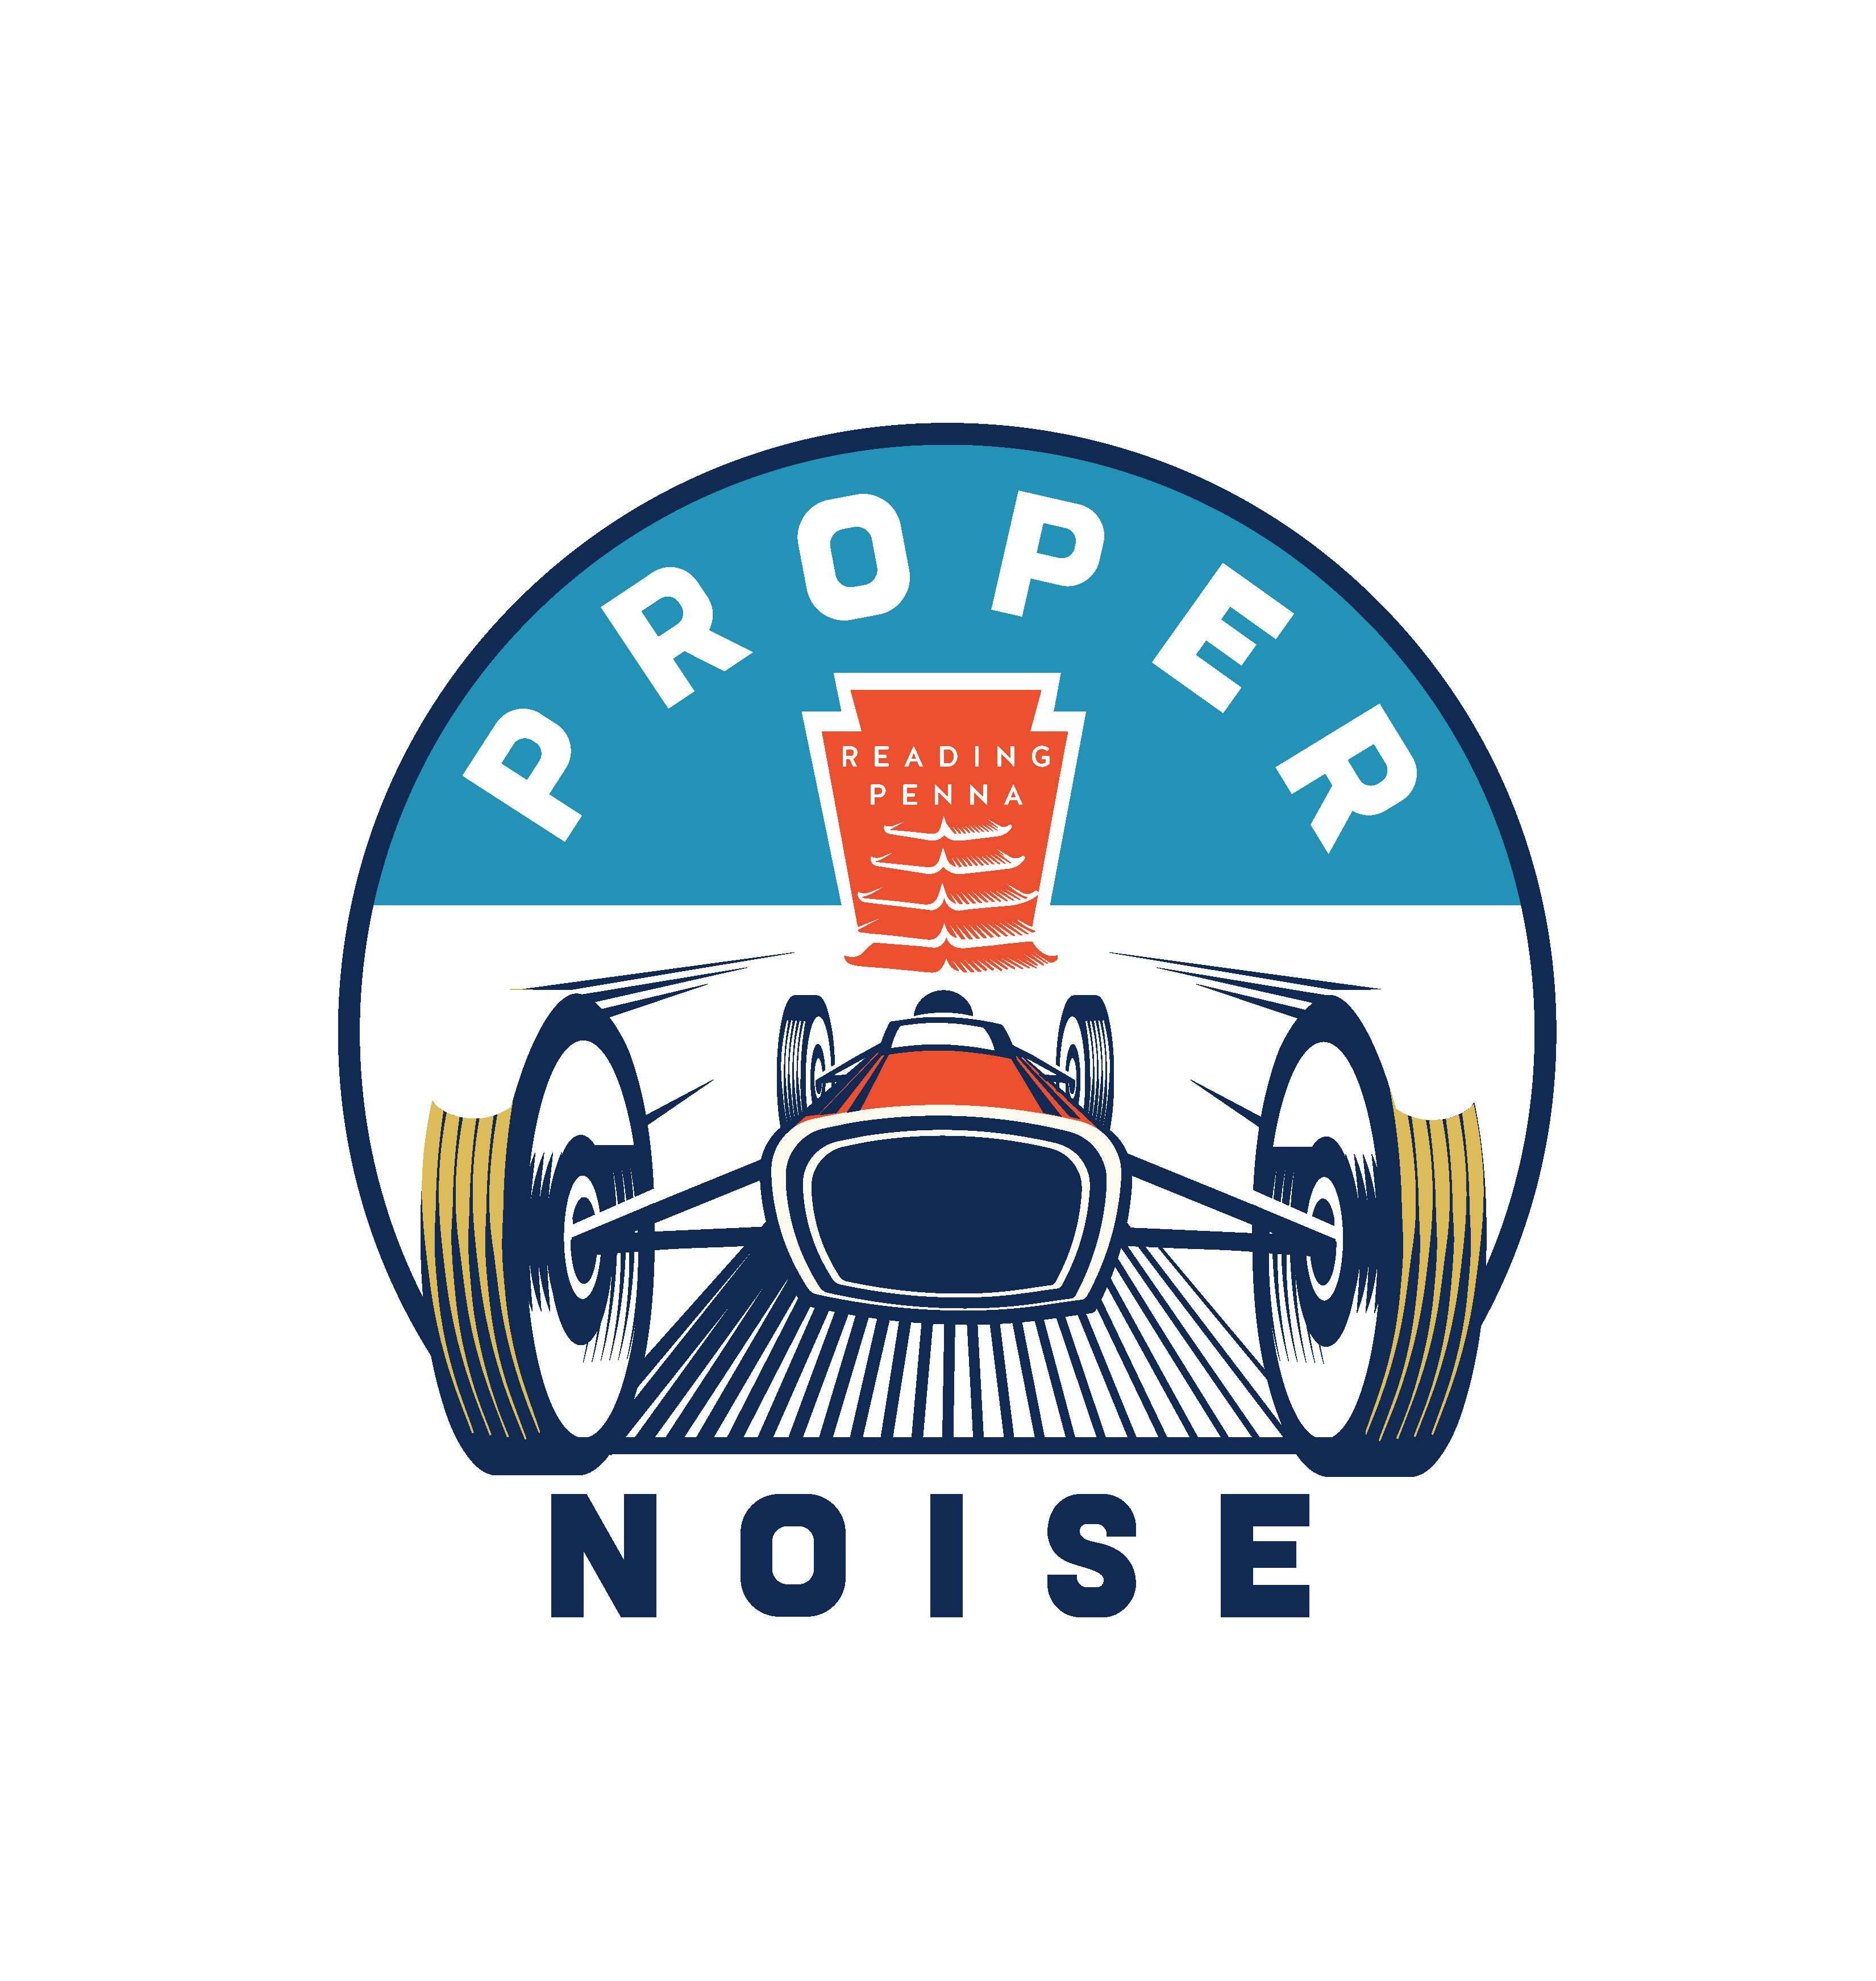 Proper Noise